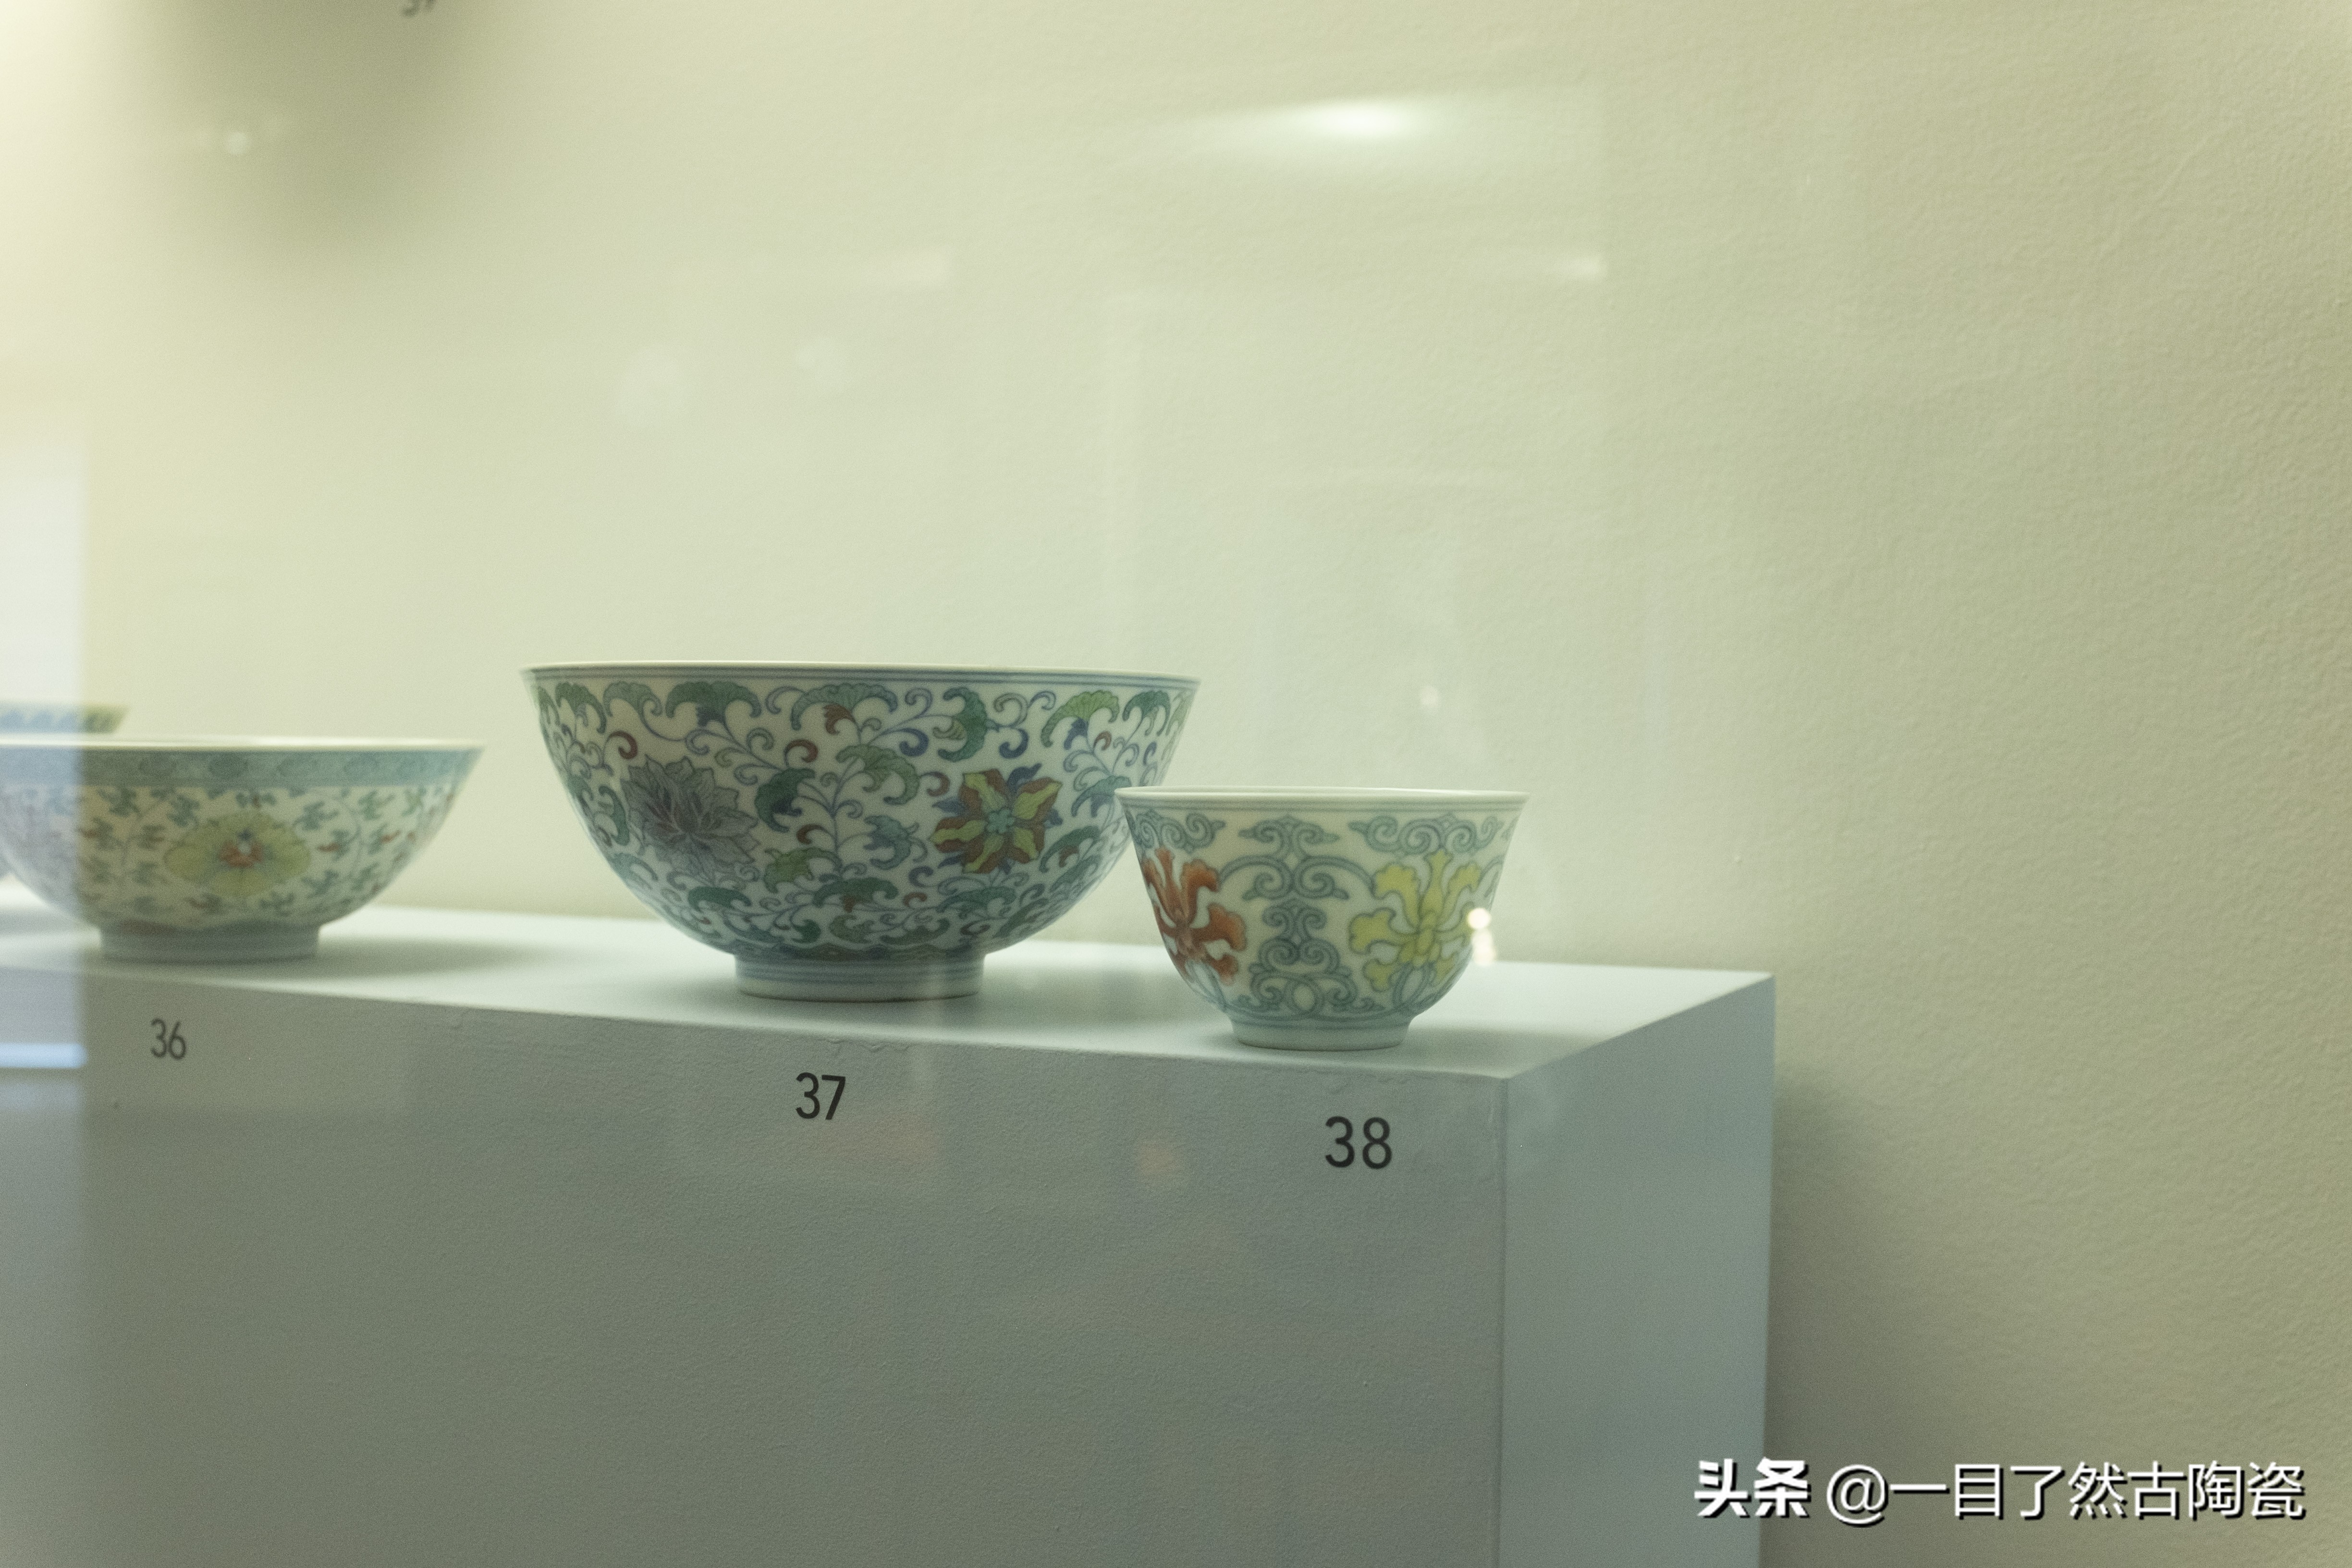 135张图在线观赏：法国吉美博物馆的中国古瓷器(一)